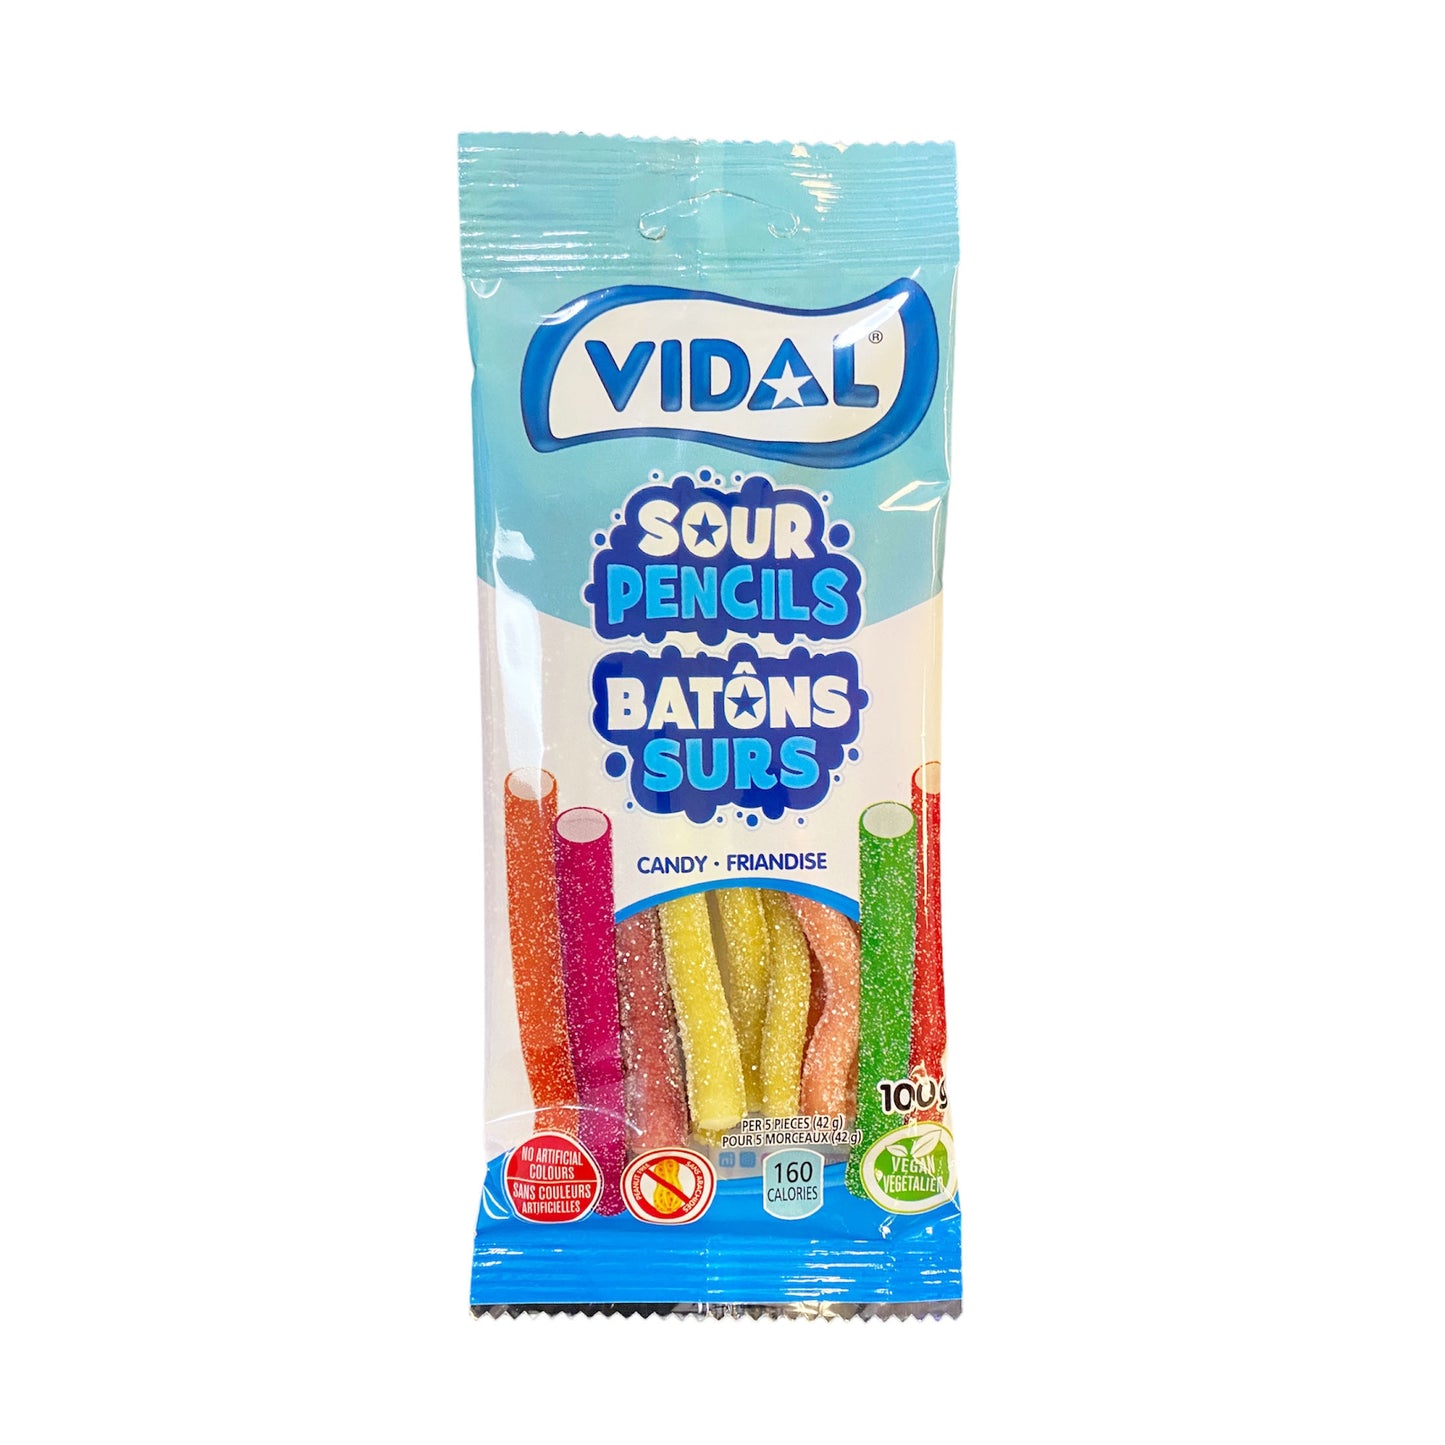 Vidal Sour Pencils - 100g